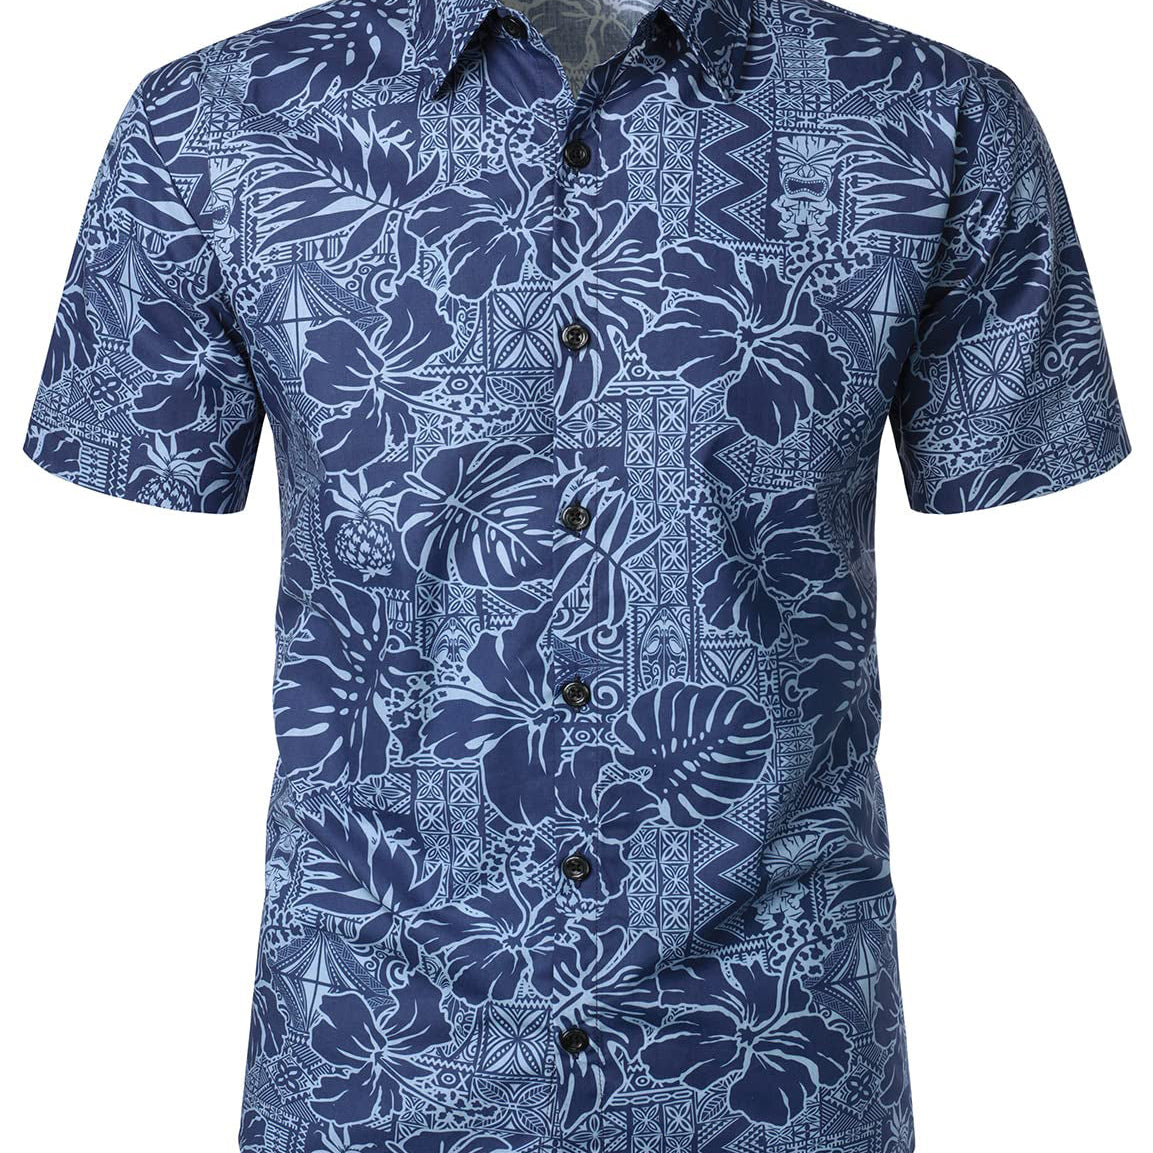 Men's Navy Blue Hawaiian Floral Hibiscus Print Summer Button Short Sleeve Summer Shirt